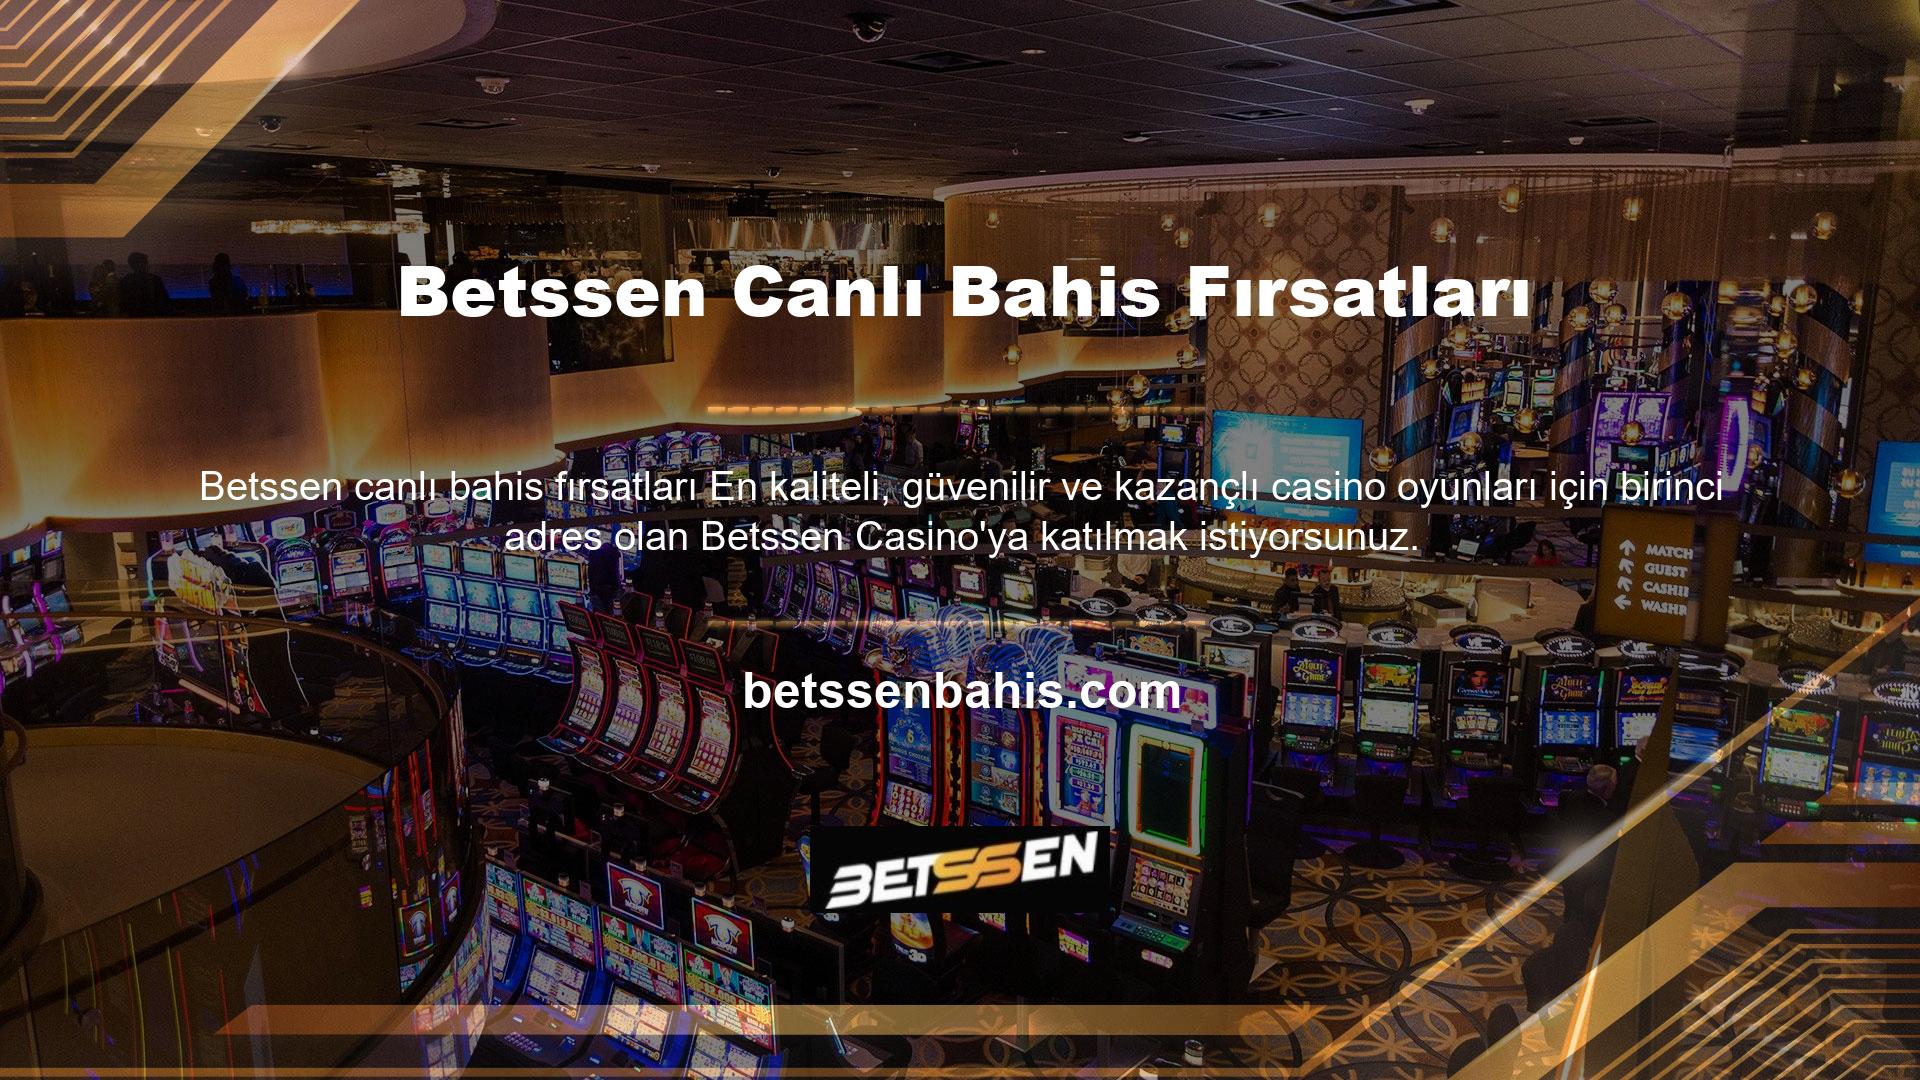 Betssen Canlı Casino'ya katılmak için casino oyuncusunun sanal bahisçinin üyesi olması gerekir